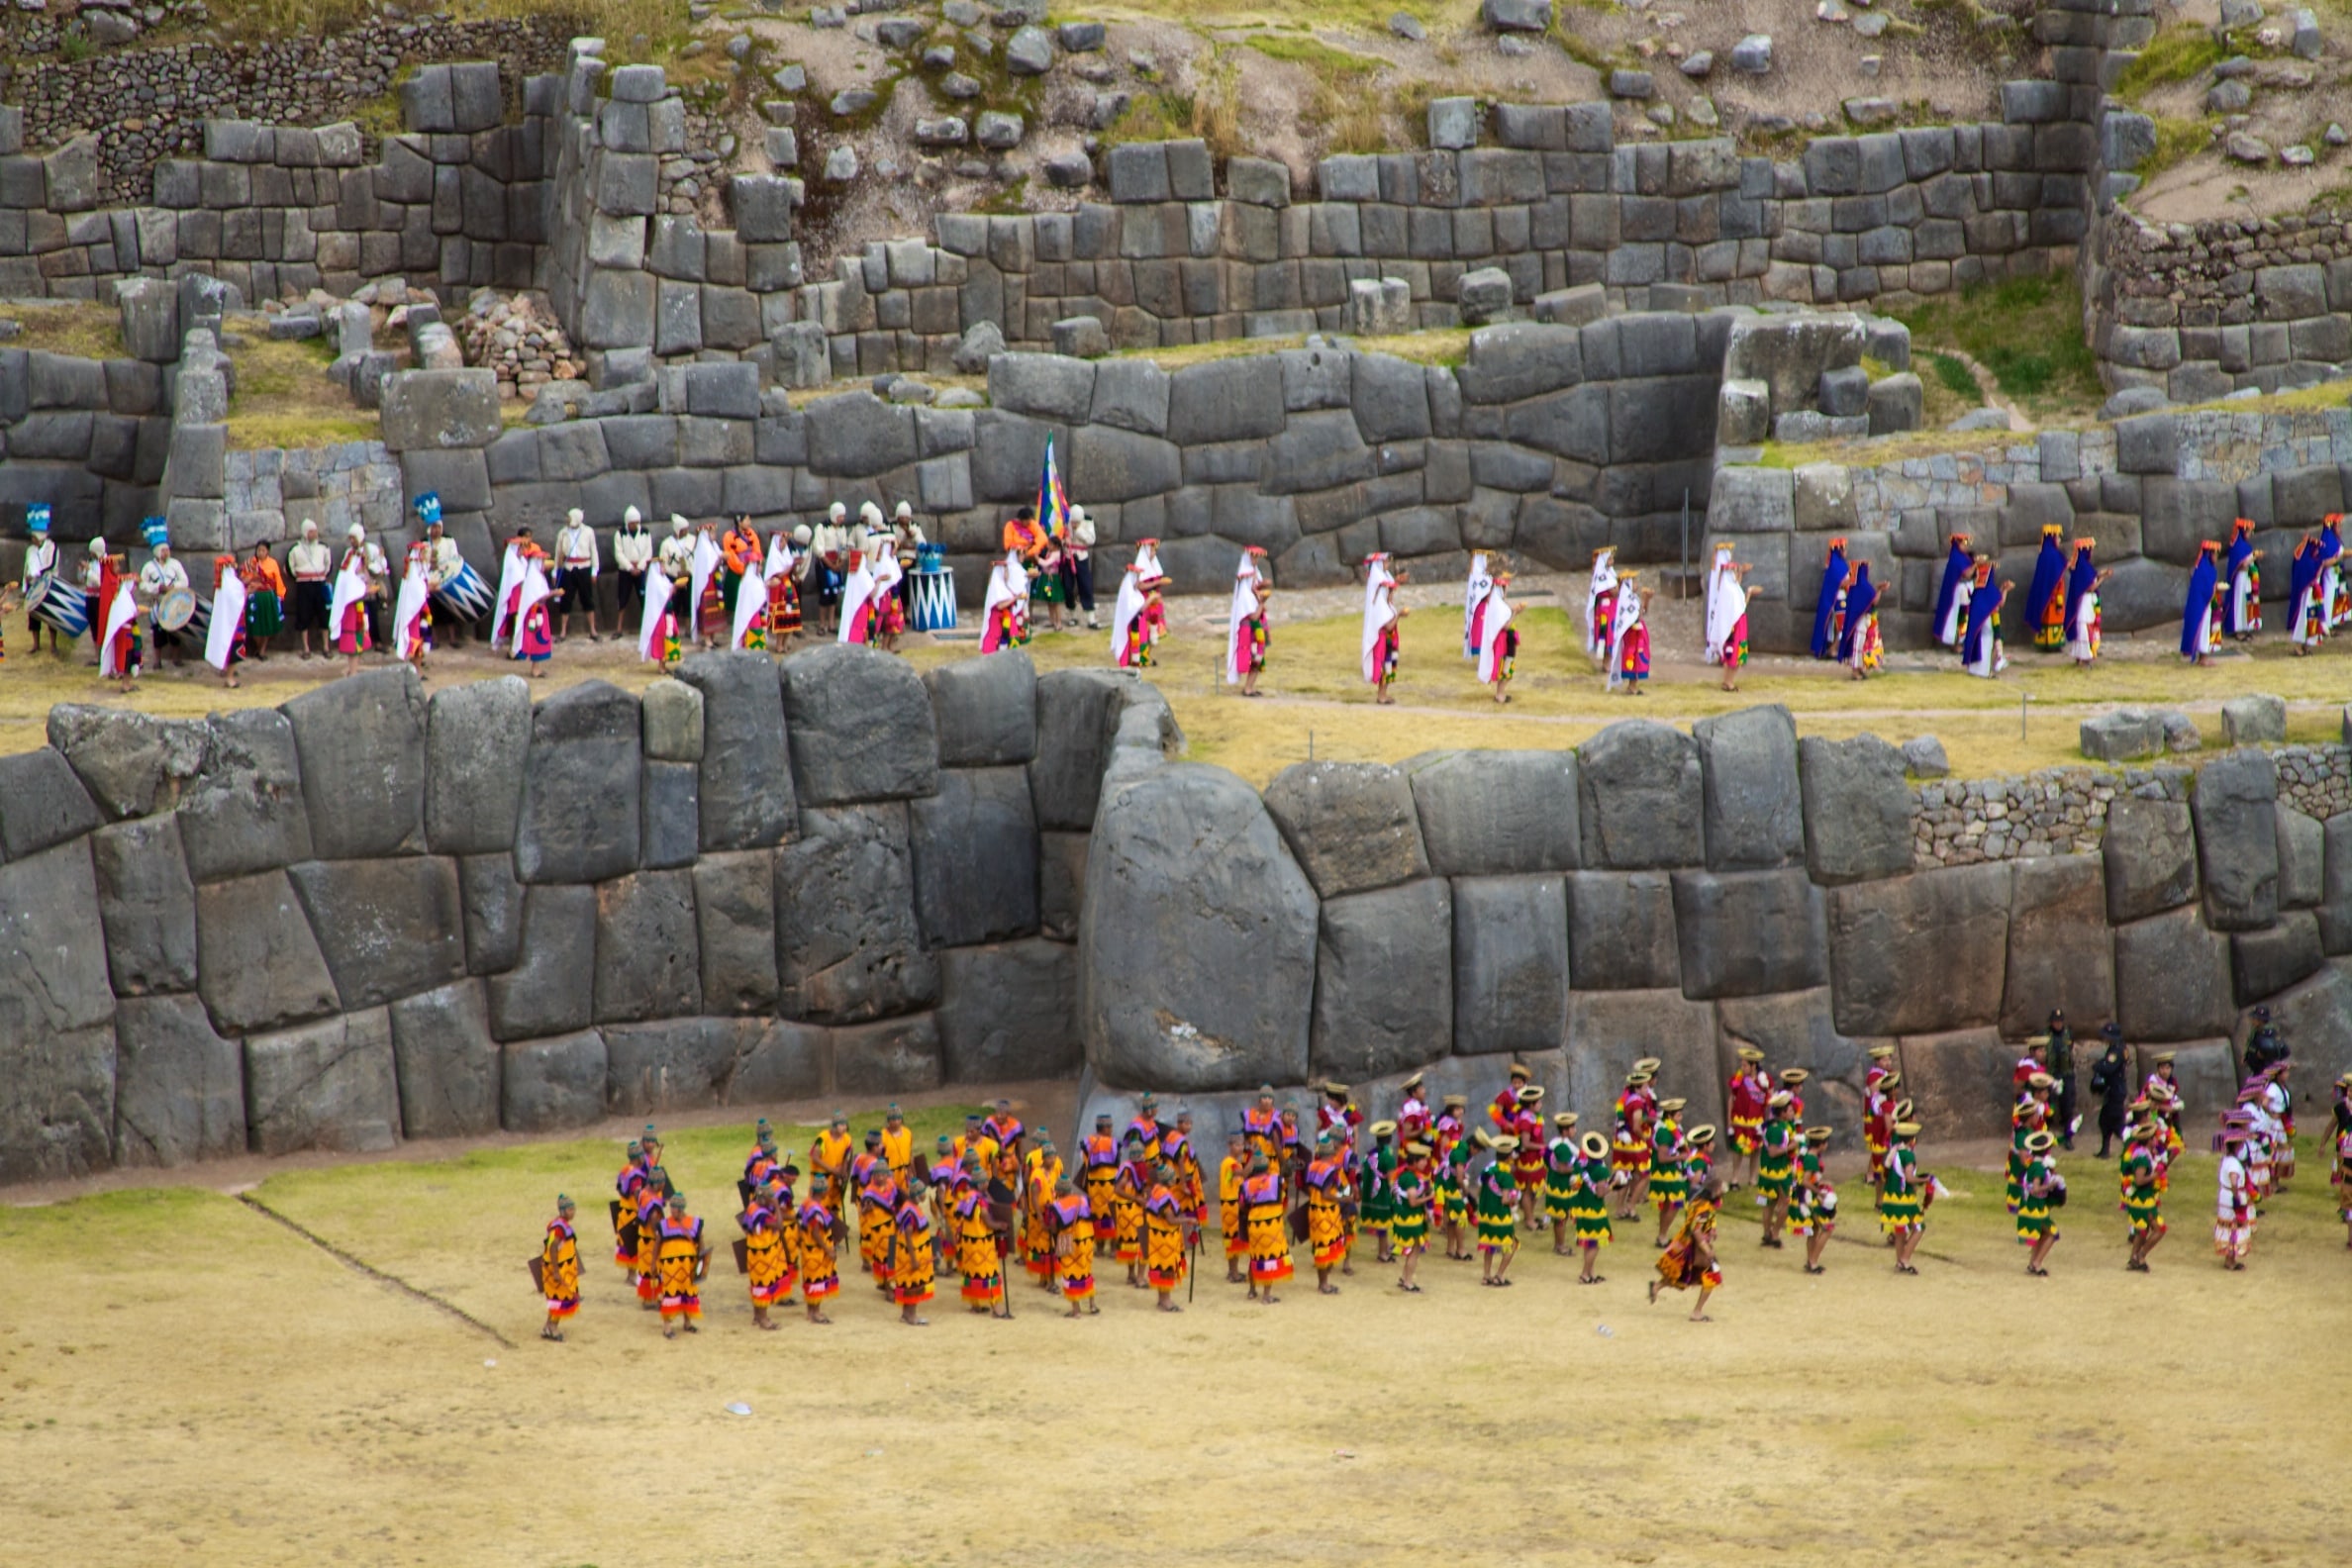 Celebración actual del Inti-raymi en Sacsayhuaman, Cusco.